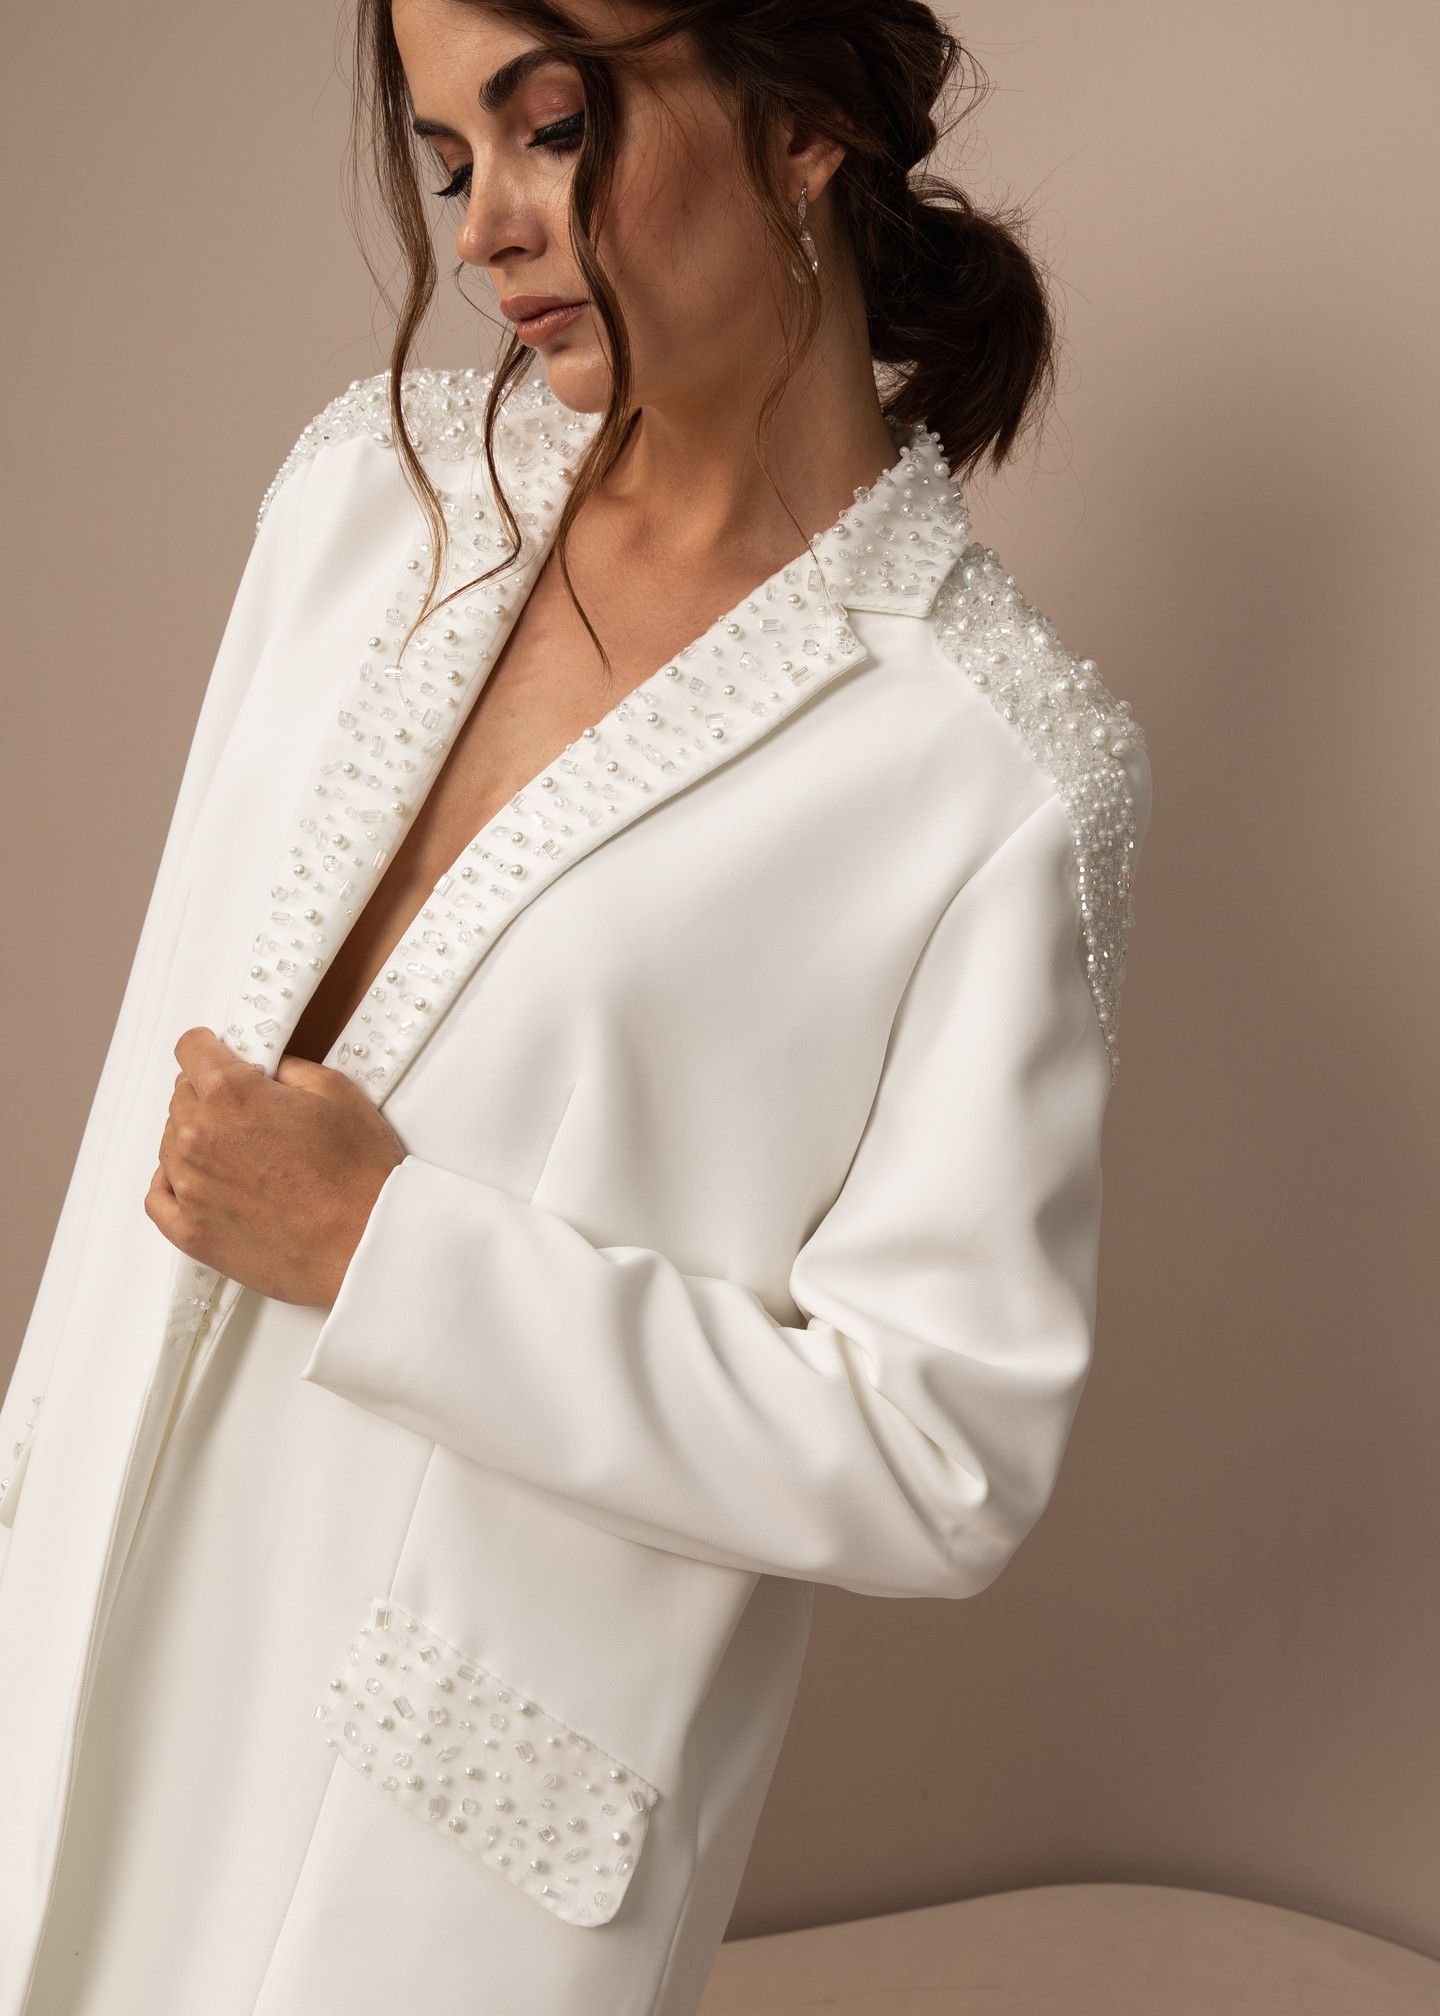 Жакет с вышивкой и эполетами, 2021, одежда, жакет, свадебное, молочно-белый, расшитый свадебный костюм №2, рукава, вышивка